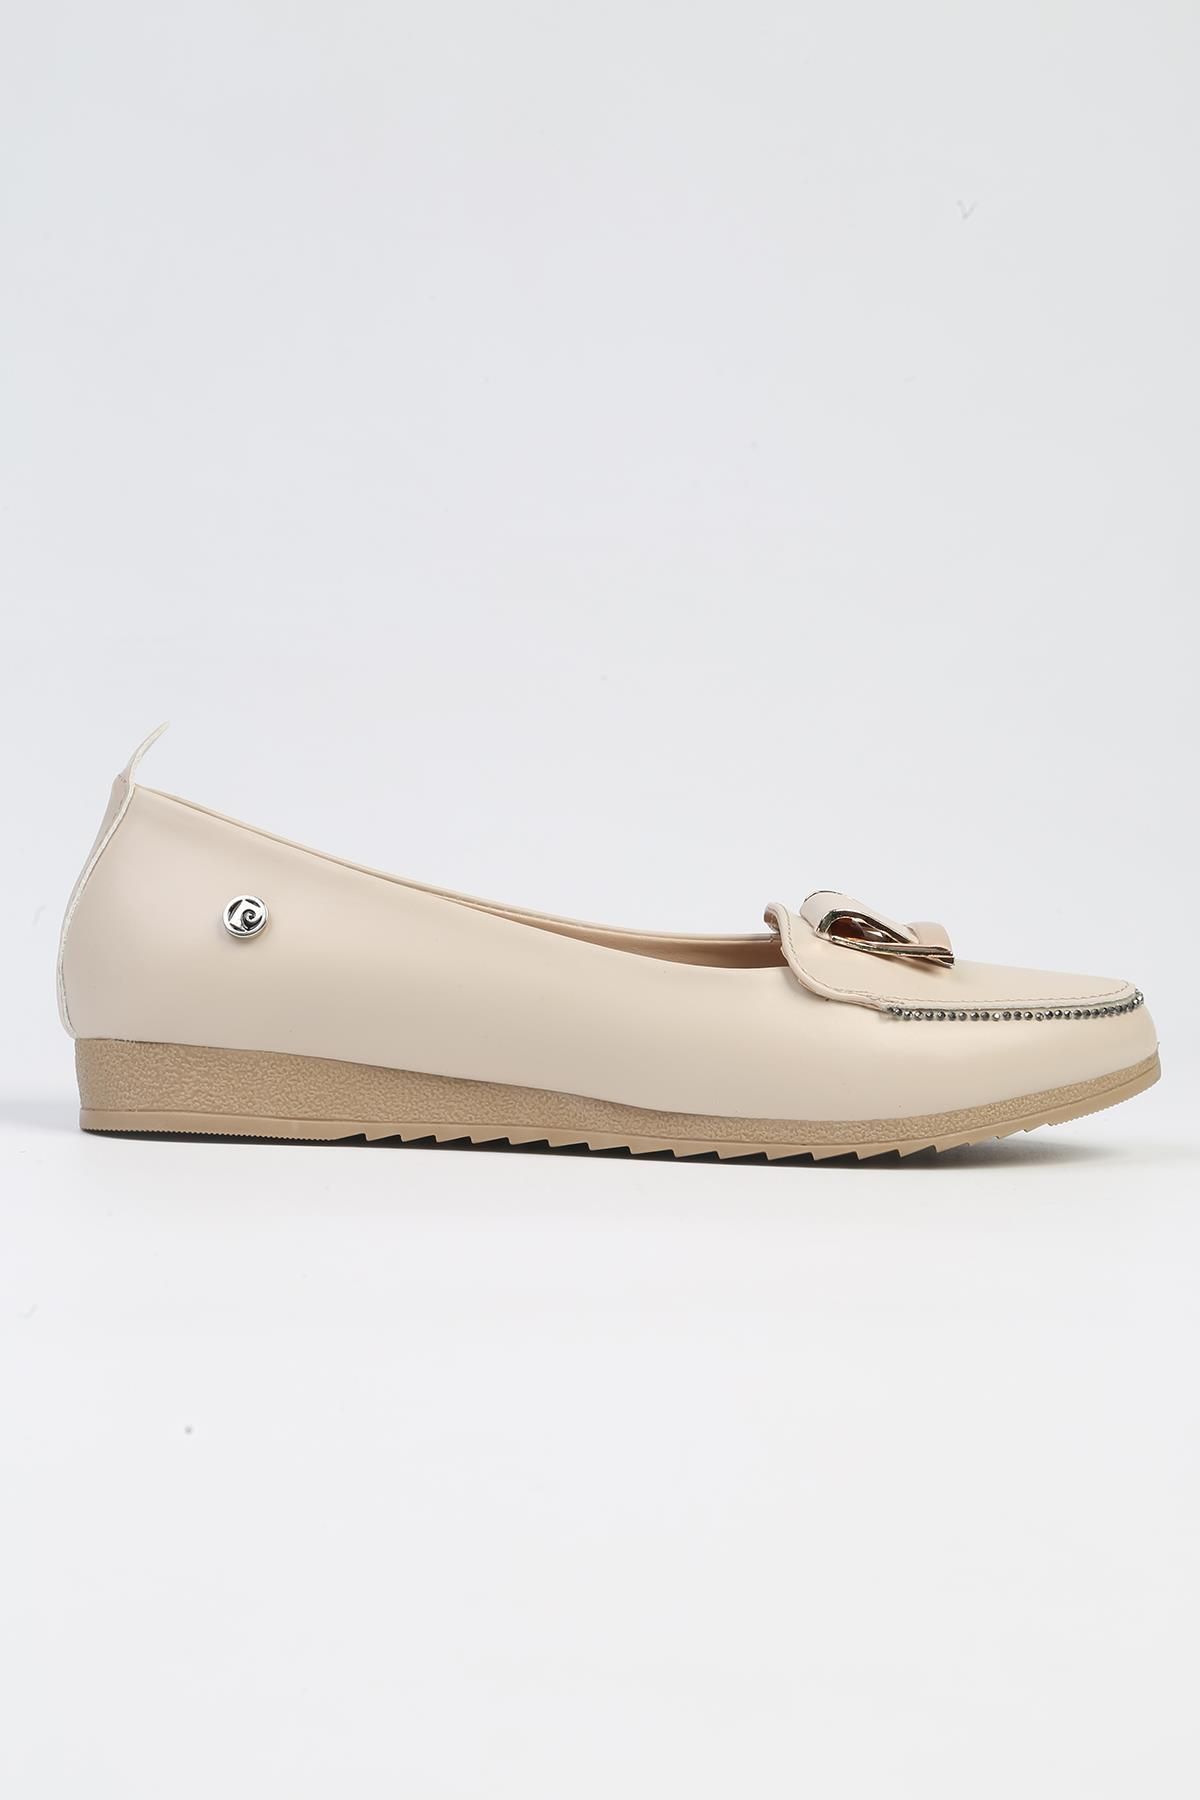 Pierre Cardin ® | PC-53019- 3962 Bej-Kadın Günlük Ayakkabı